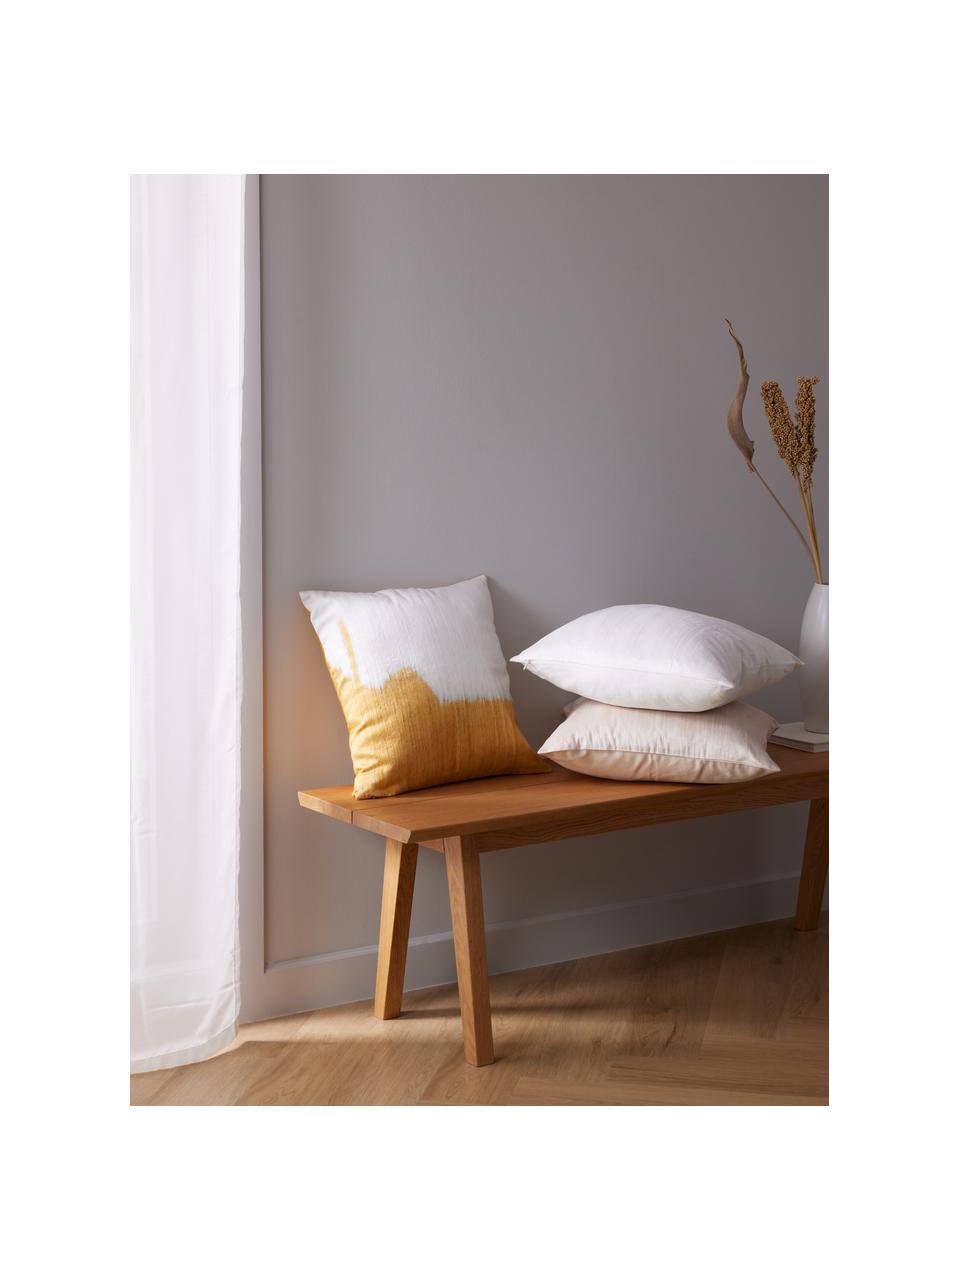 Poszewka na poduszkę z bawełny i jedwabiu Aryane, Biały, S 45 x D 45 cm